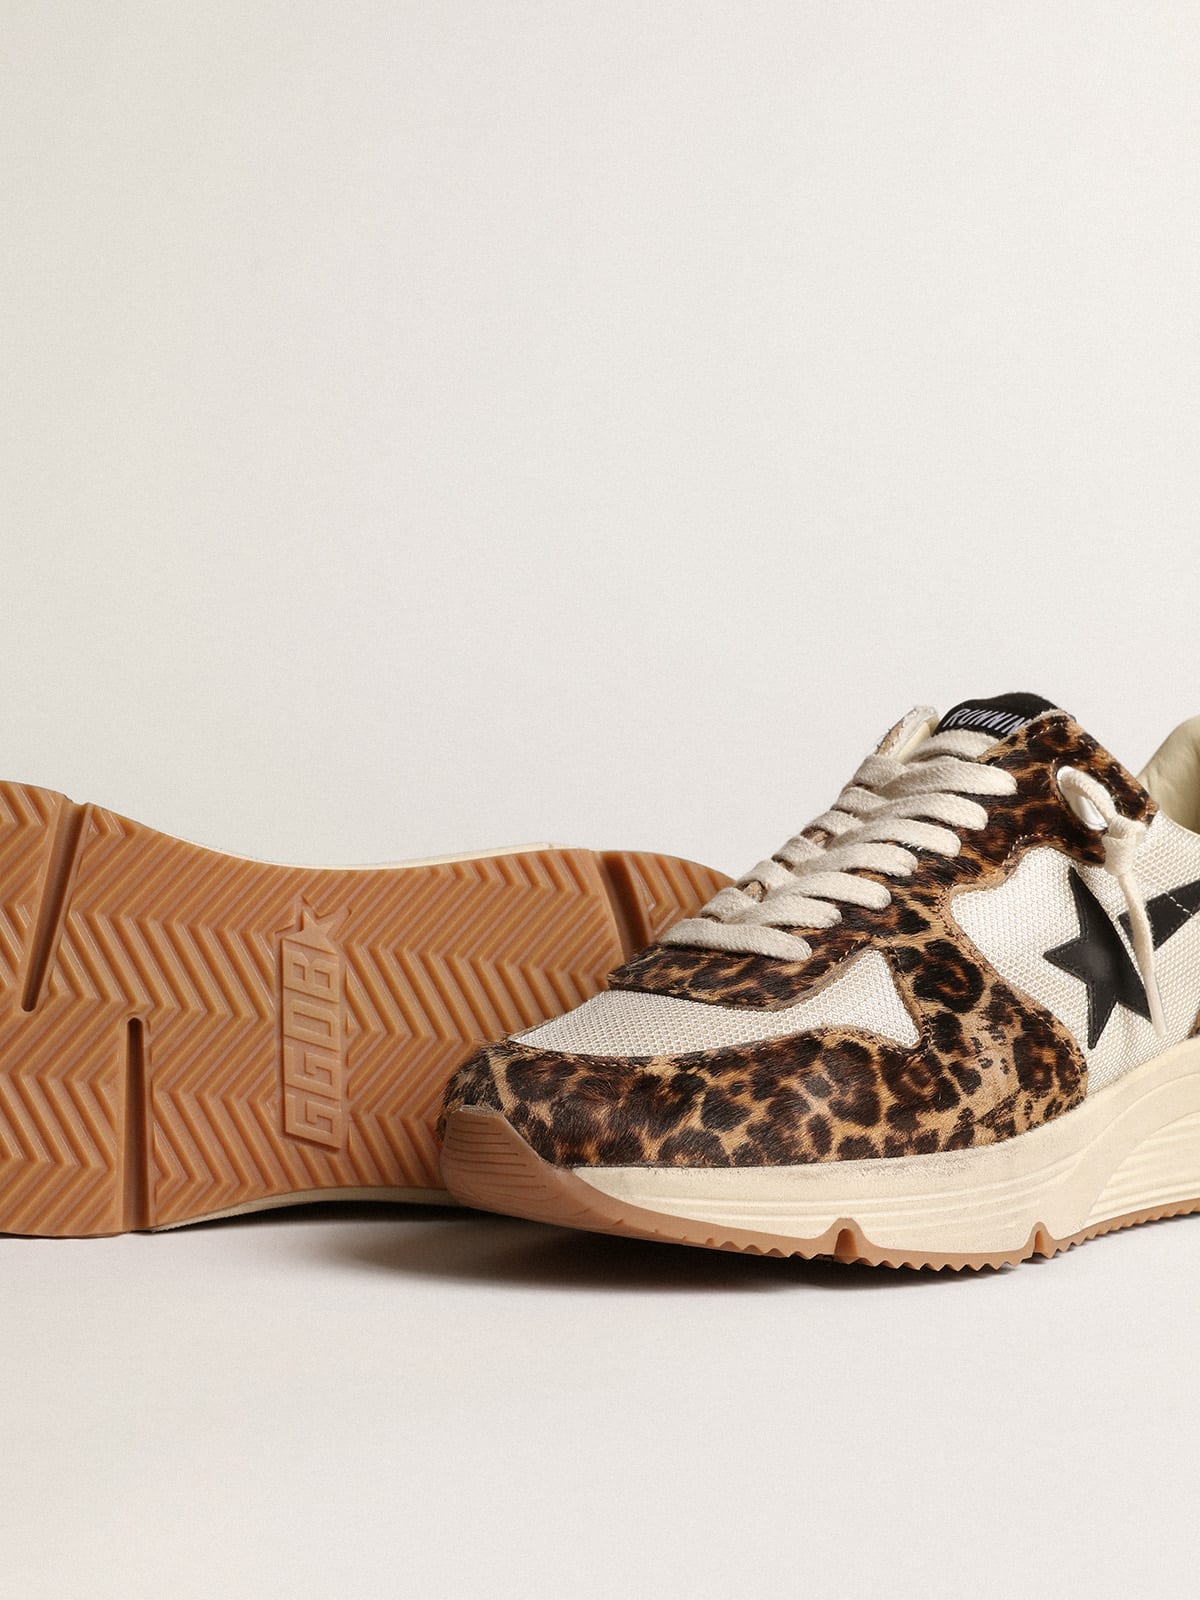 Golden Goose - Sneaker Running Sole in rete color crema con inserti in cavallino leopardato e stella in pelle nera in 